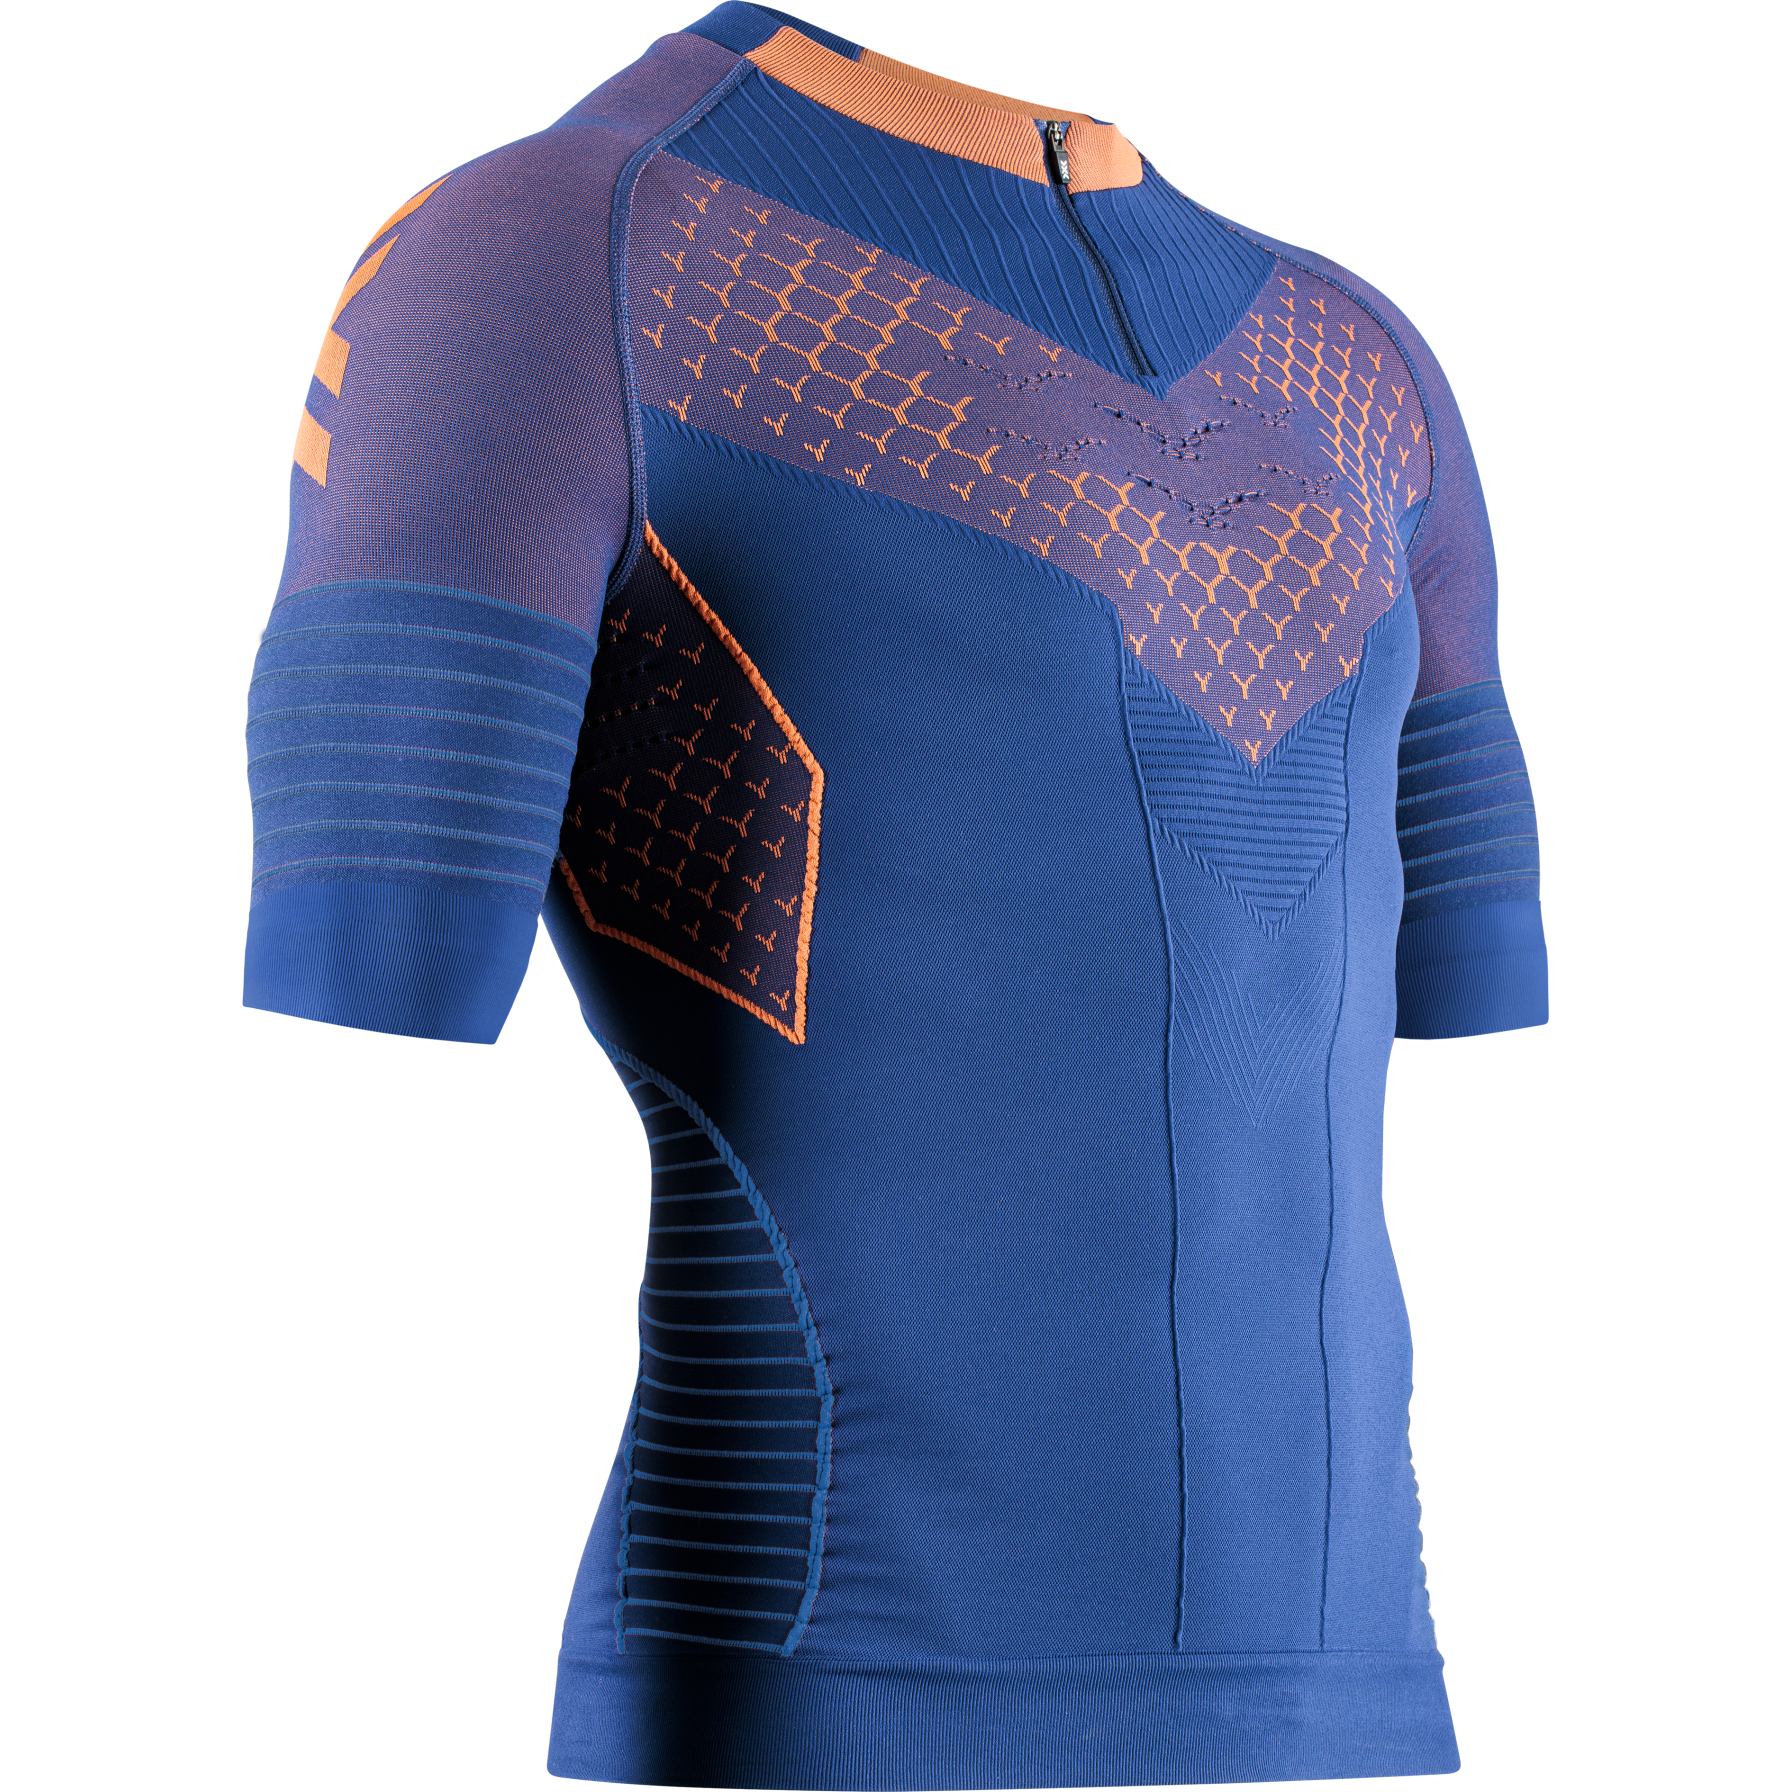 Produktbild von X-Bionic Twyce Race Laufshirt Herren - blueprint/orange